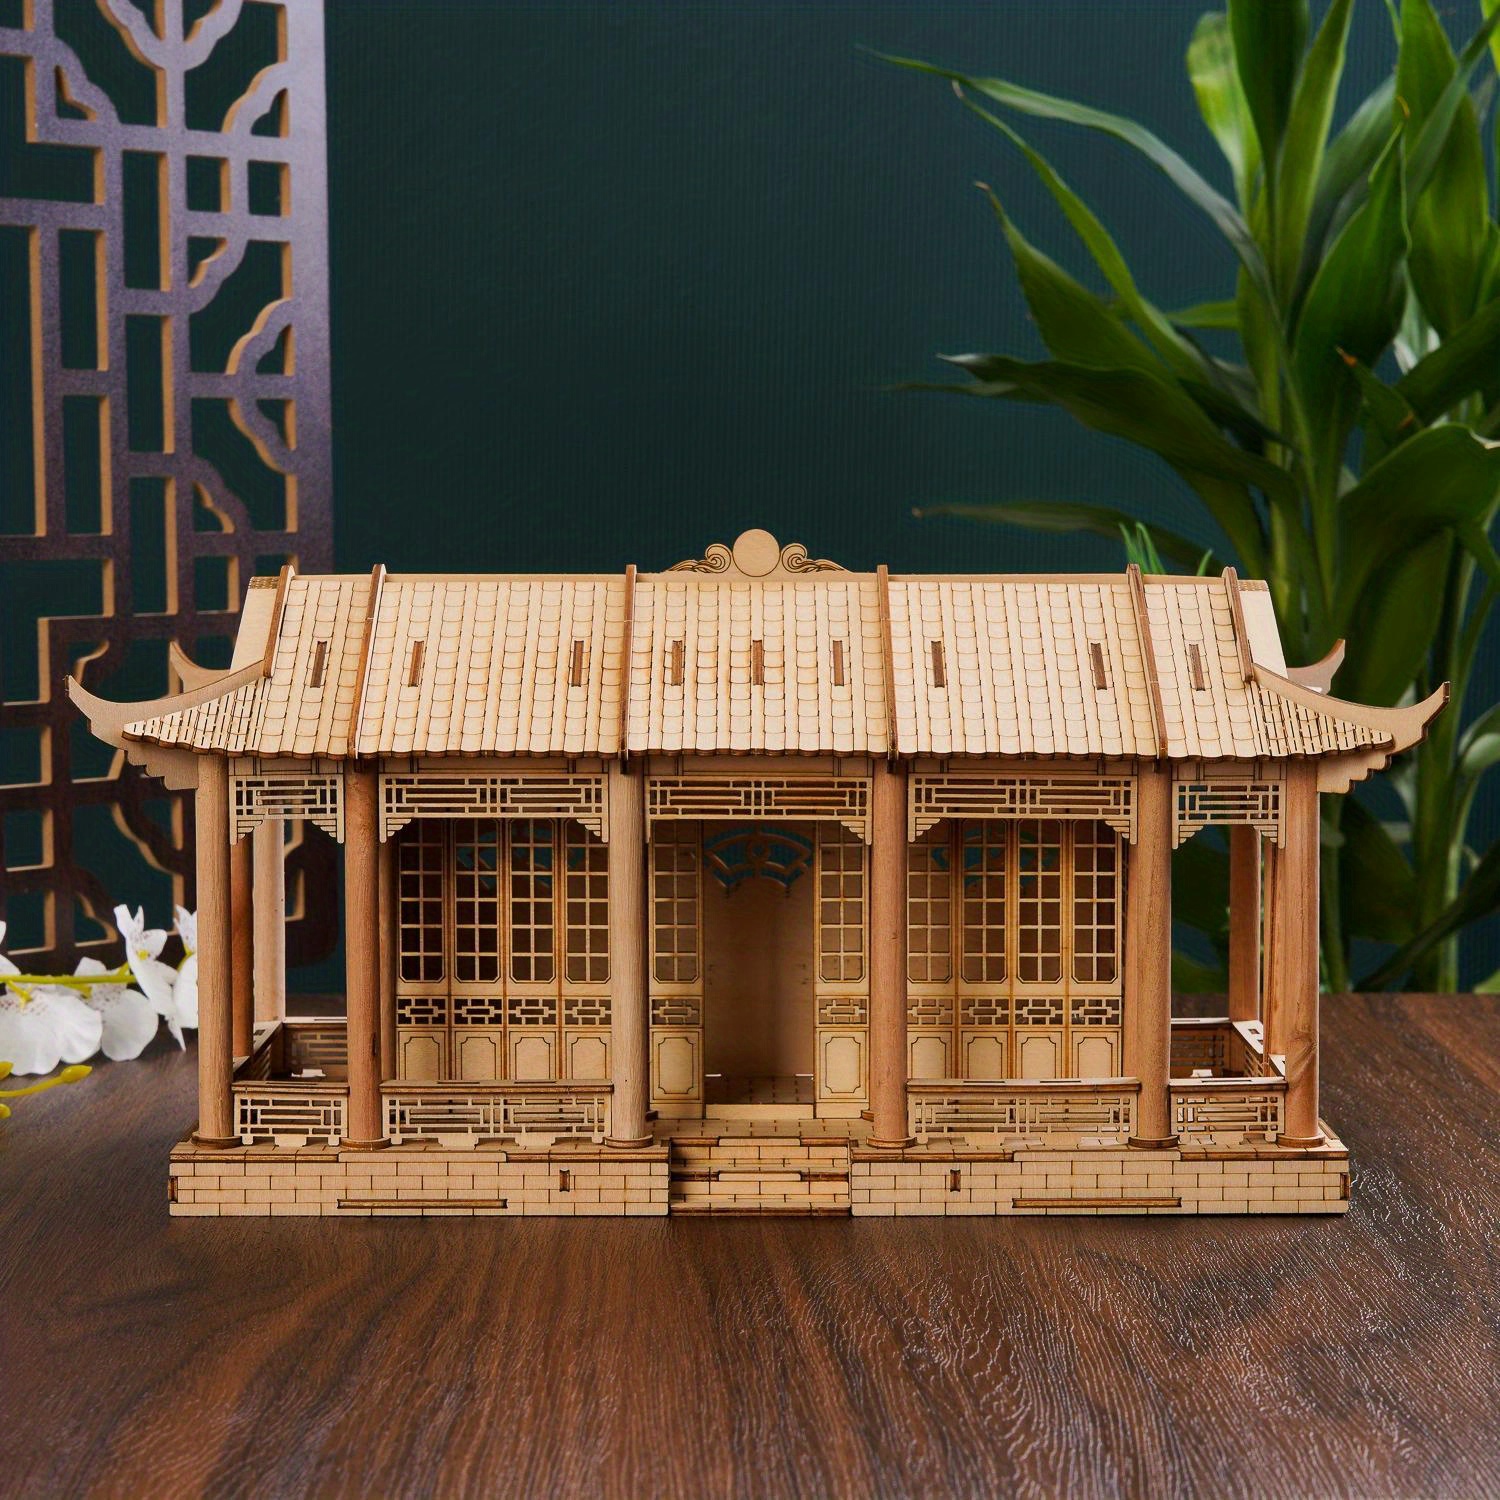 ほぞ穴構造中国模型、古代建築、3D立体パズル、建築模型玩具、木